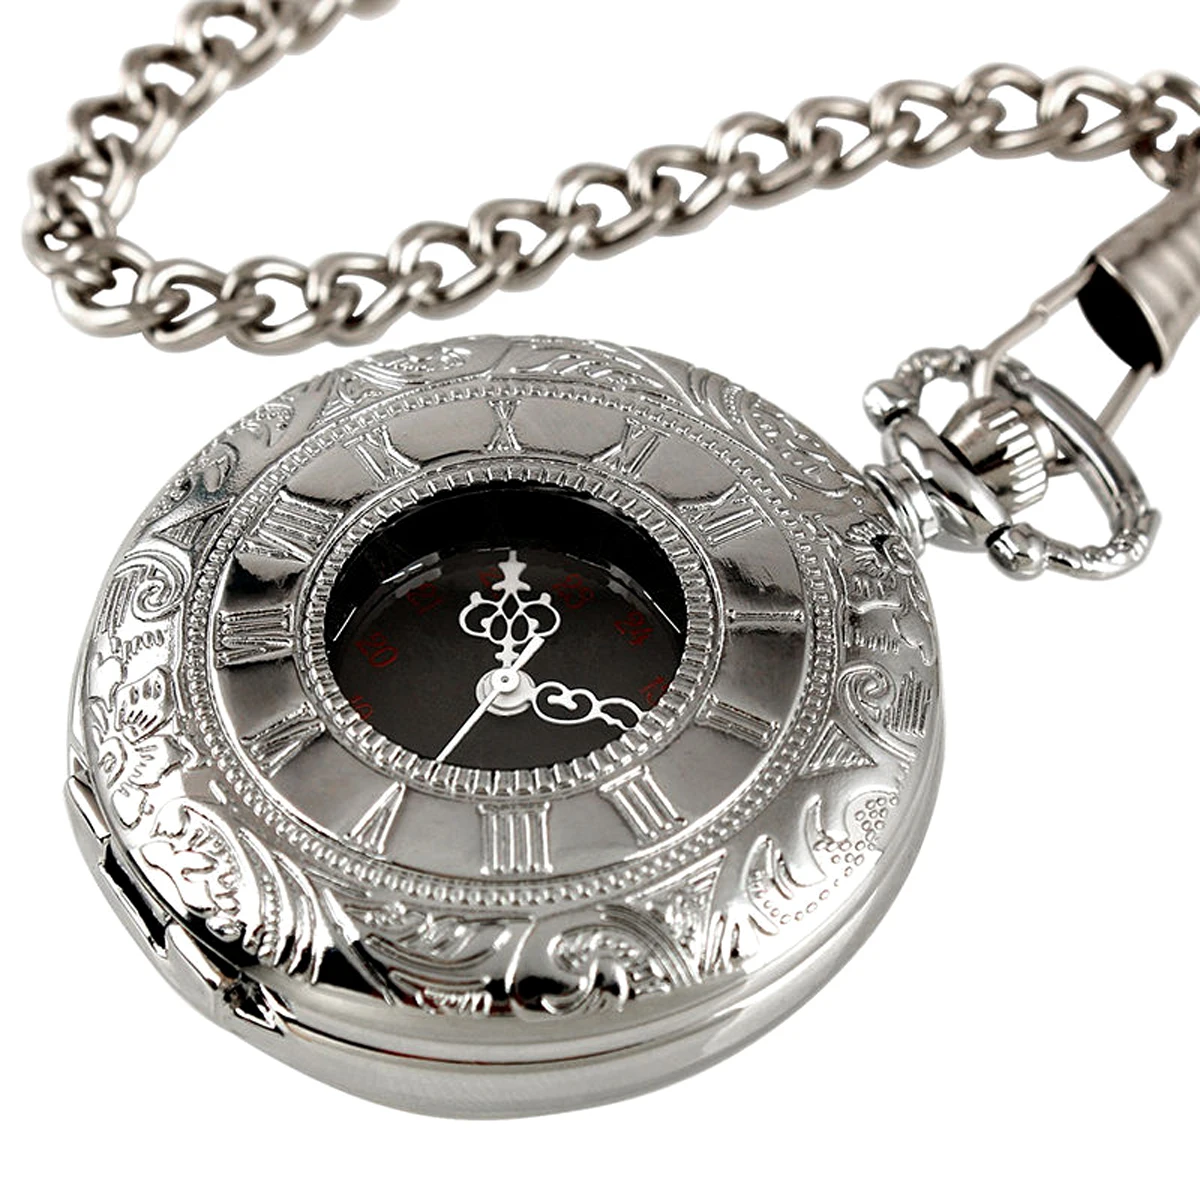 Shellhard Новое поступление винтажные полые серебряные карманные часы с брелоком римские цифры черный циферблат кварцевые карманные часы для мужчин и женщин